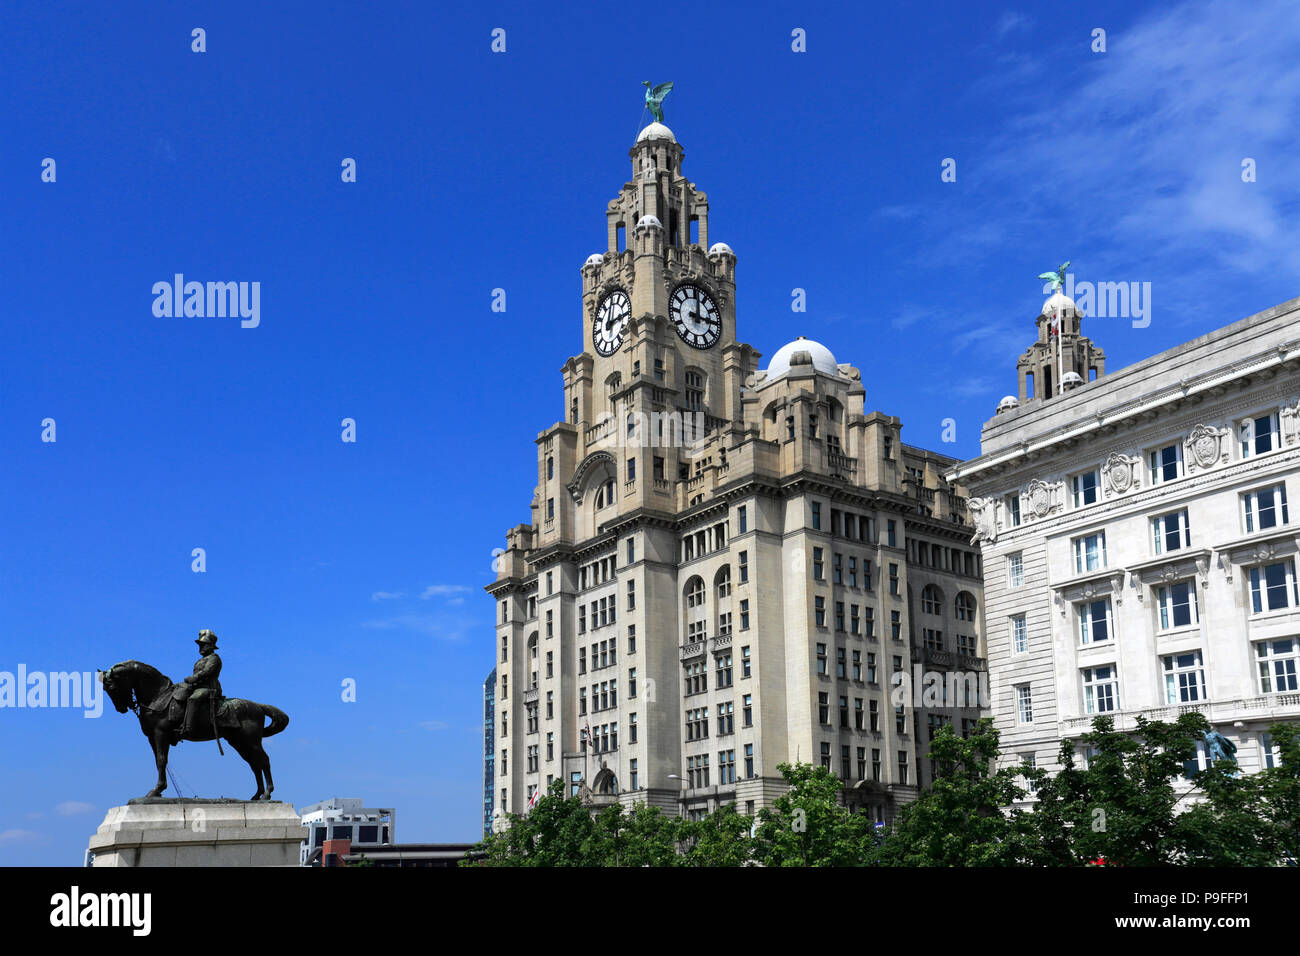 Royal Liver Building, George's Parade, Pier Head, Sito Patrimonio Mondiale dell'UNESCO, Liverpool, Merseyside England, Regno Unito Foto Stock